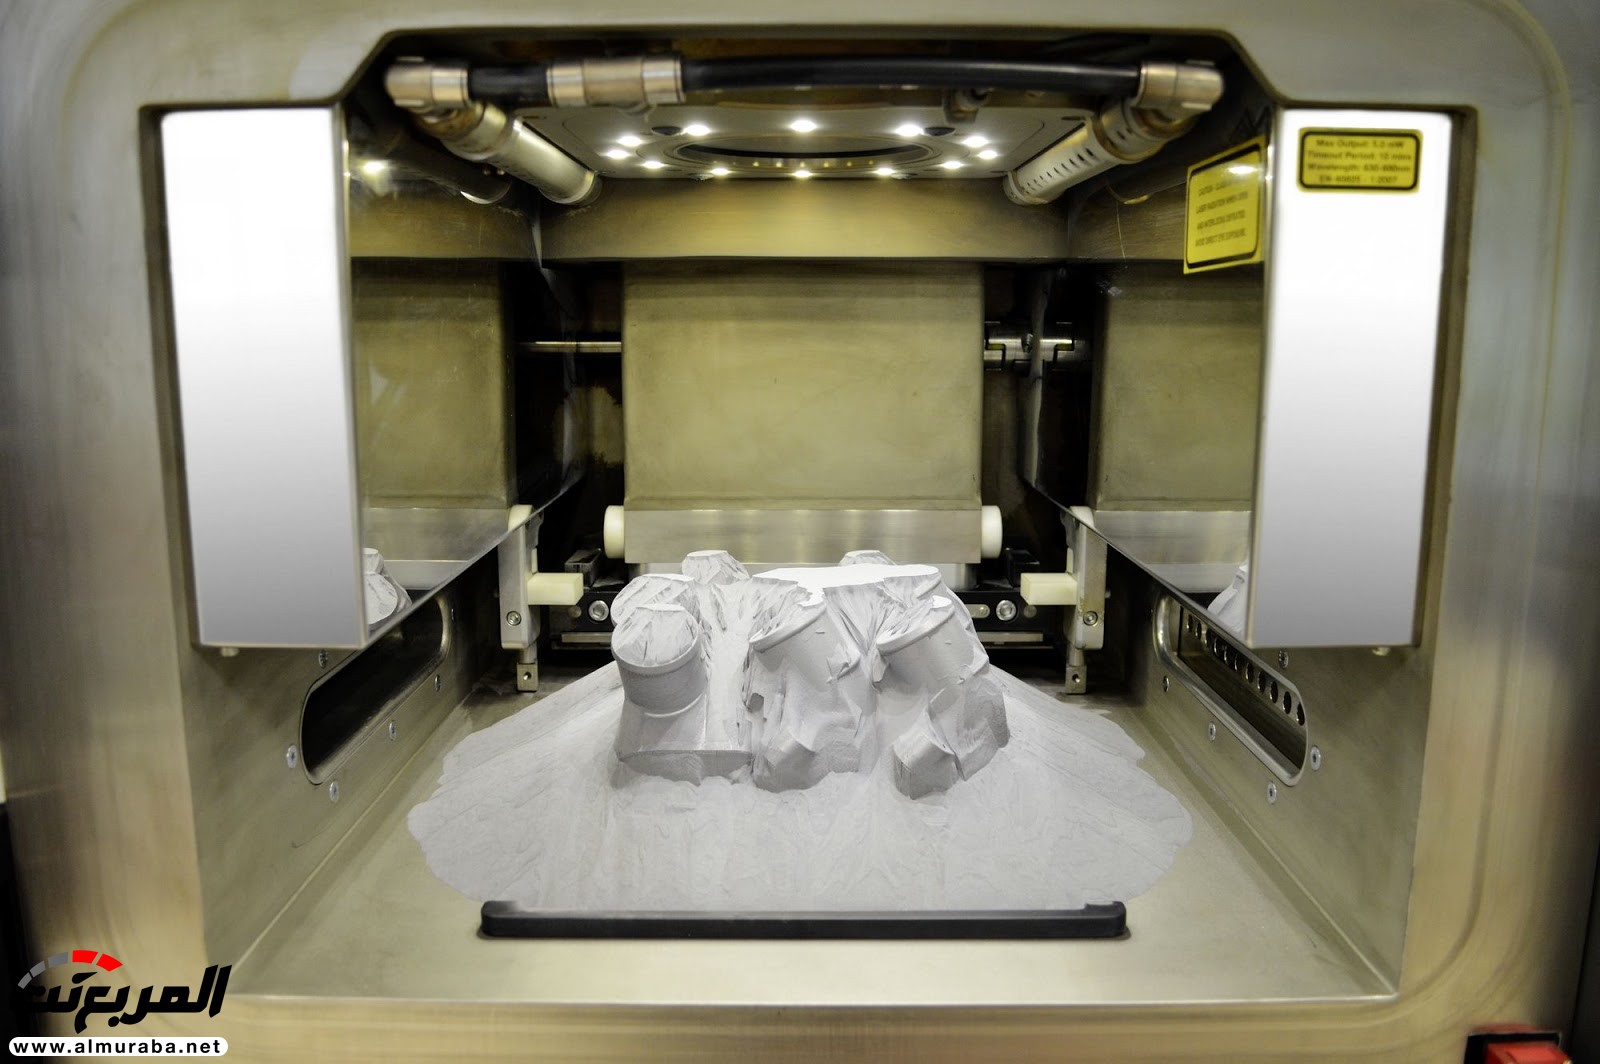 مرسيدس استطاعت تصنيع قطع غيار بطابعة 3D 1